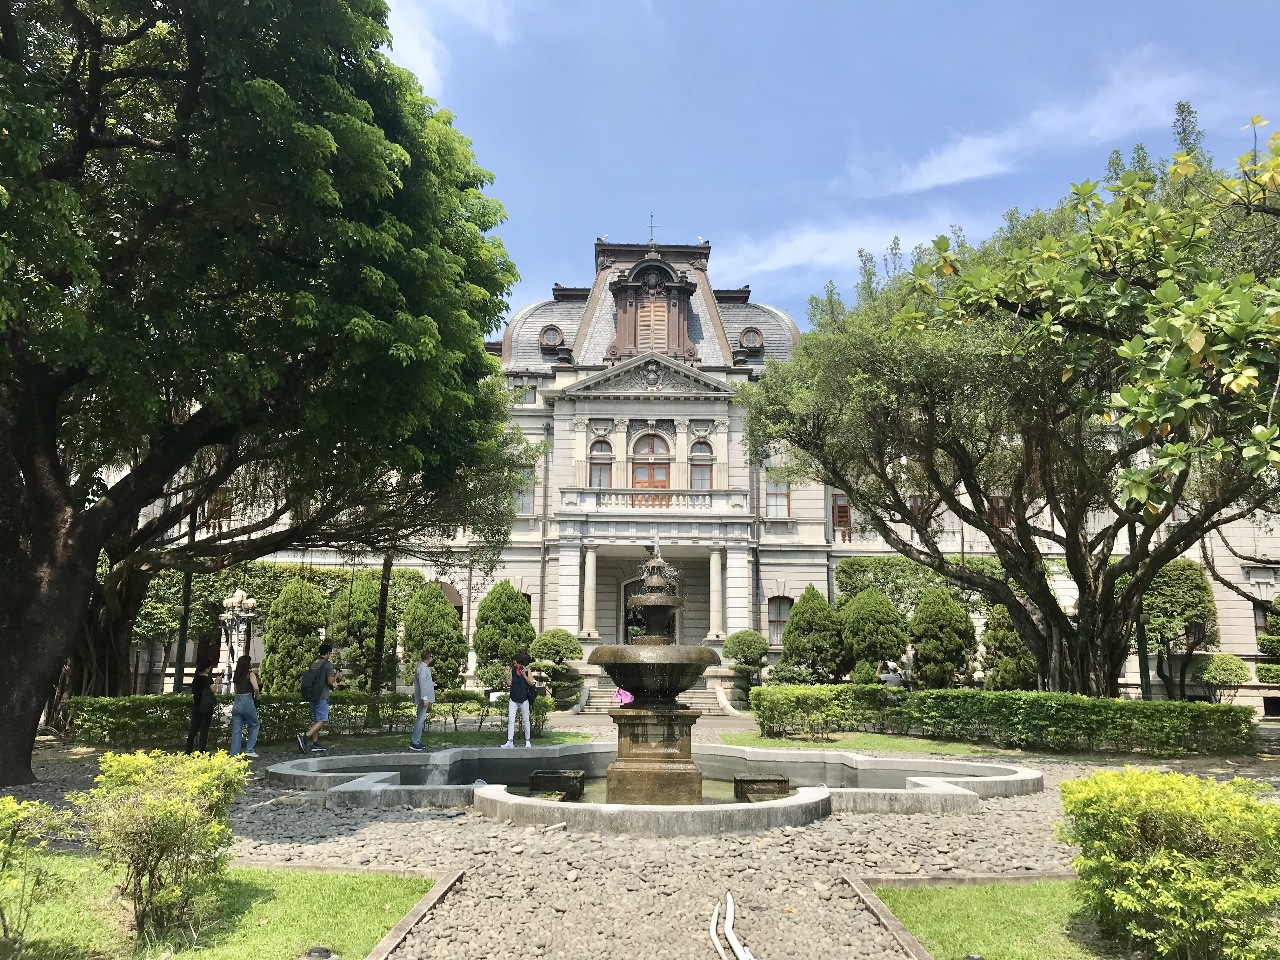 La Taipei Guest house, à Taipei, a été construite en 1901 pendant la période d'occupation japonaise et a connu une rénovation/transformation majeure quelques années plus tard, entre 1911 et 1930 (Image : RTI/Lisa Duffaud)